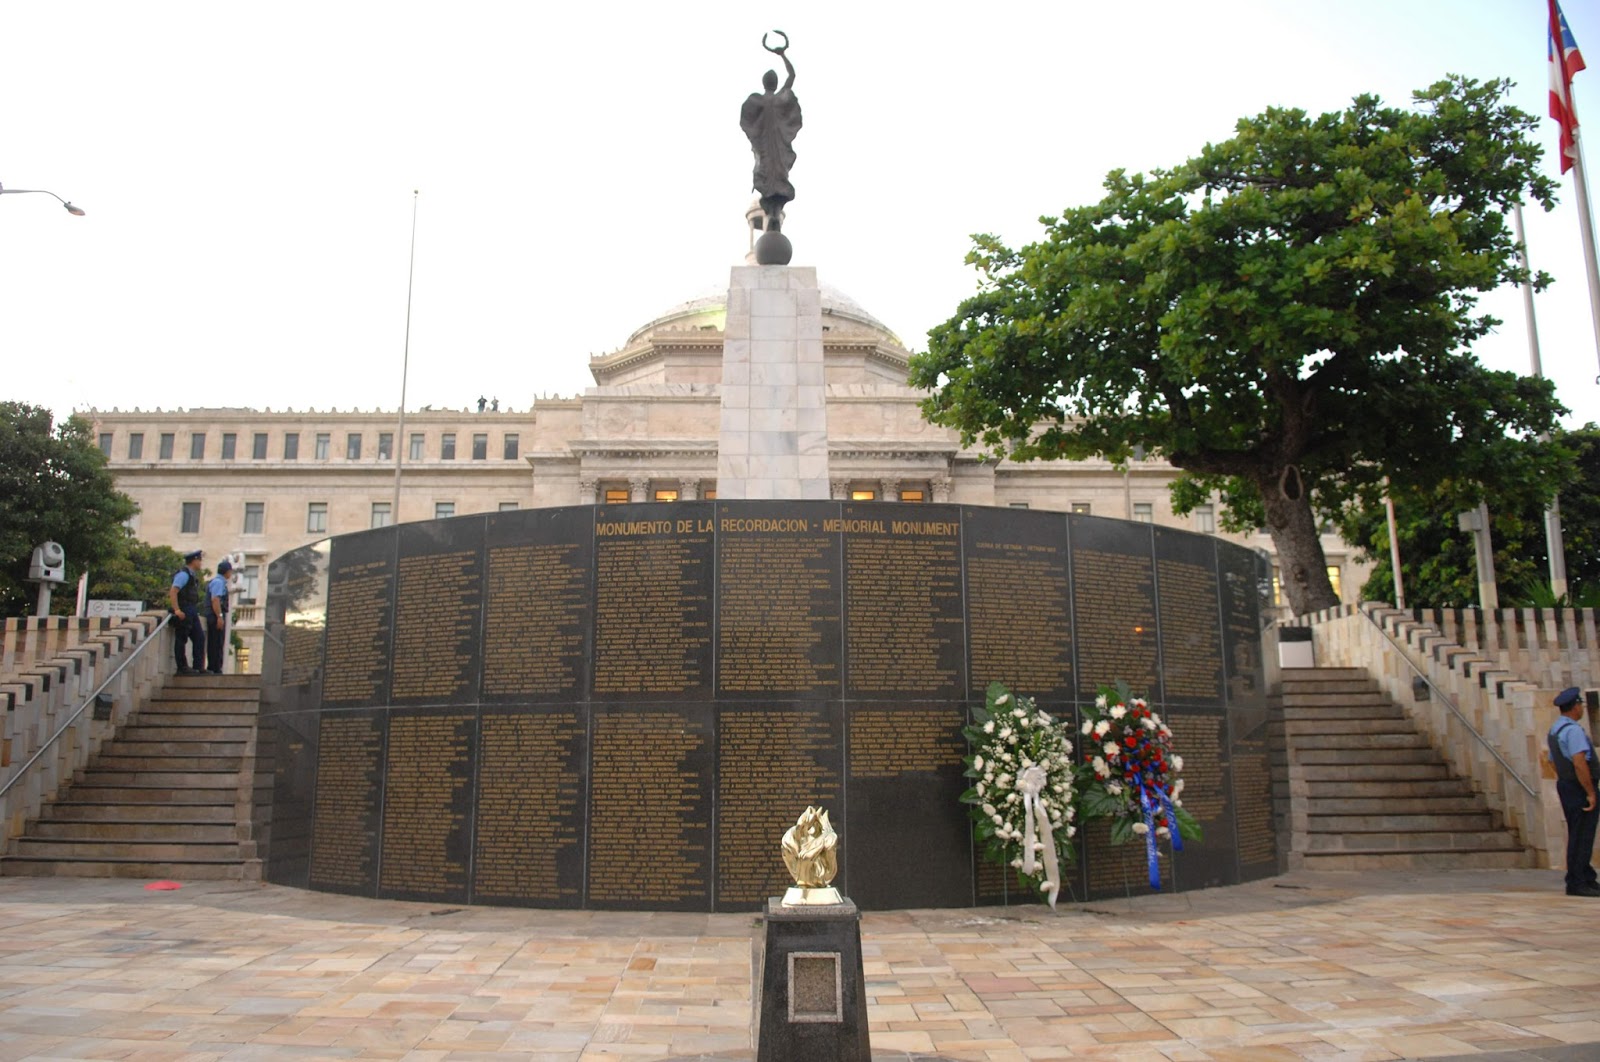 ARTE PUBLICO: ESCULTURAS Y MONUMENTOS EN PUERTO RICO: Monumento de la